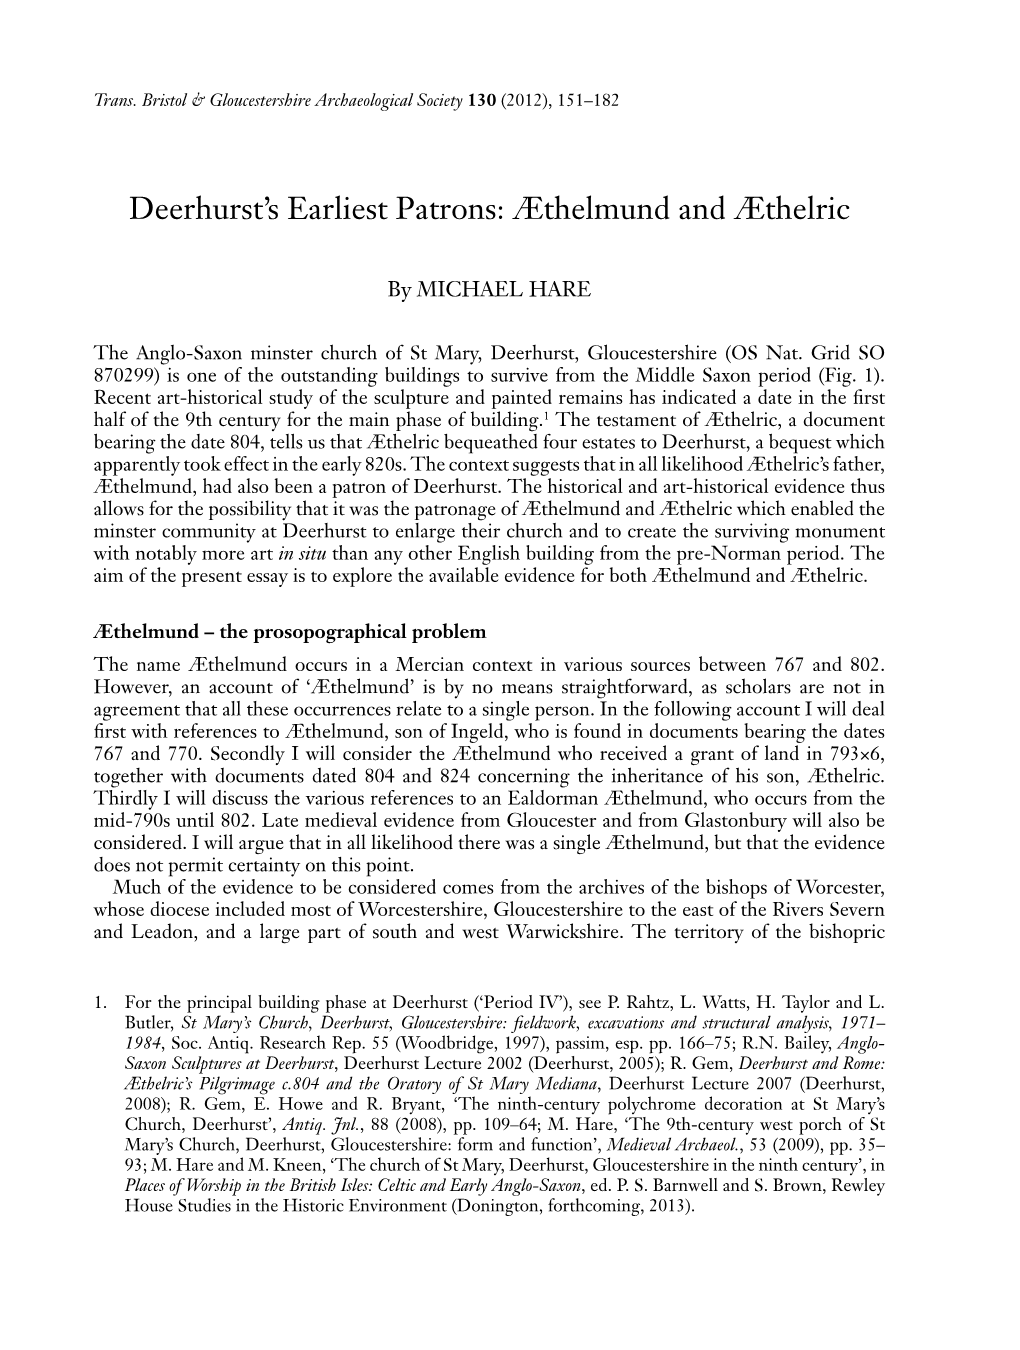 Deerhurst's Earliest Patrons: Æthelmund and Æthelric